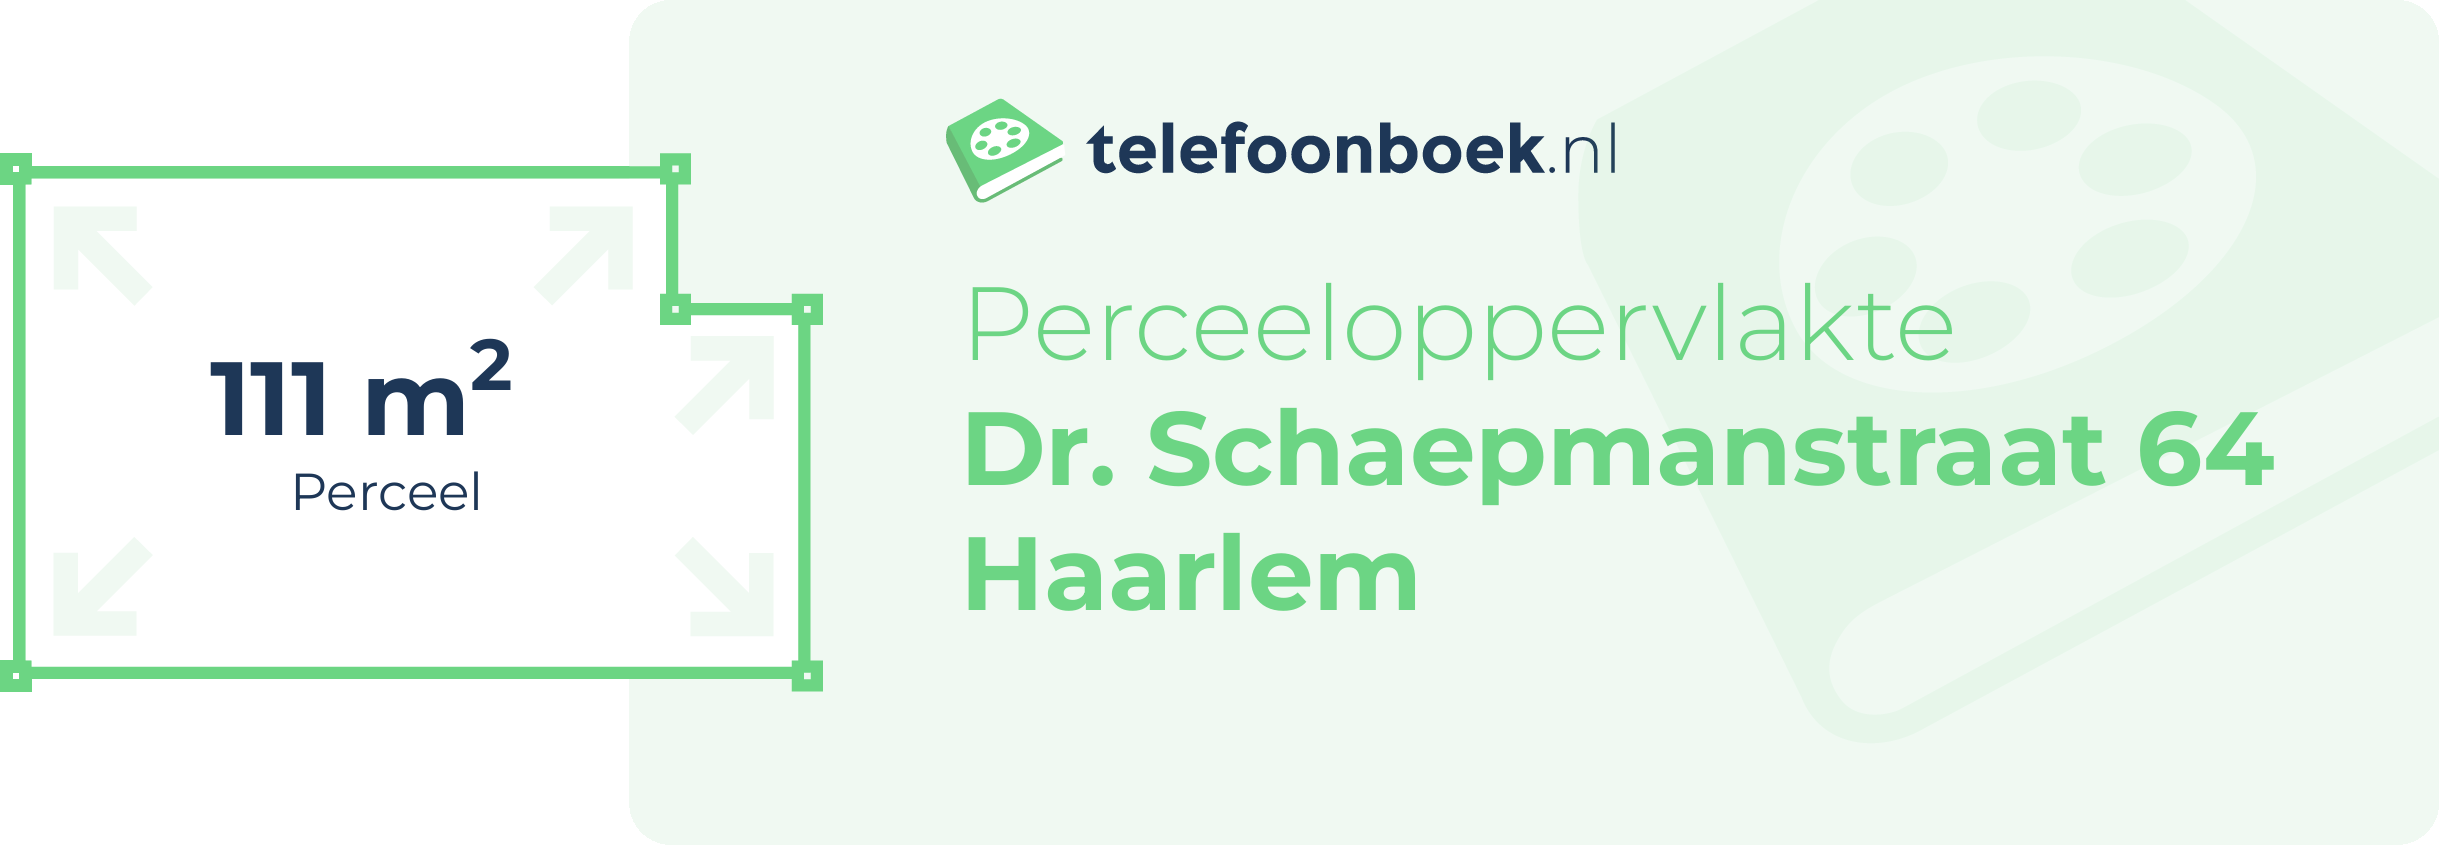 Perceeloppervlakte Dr. Schaepmanstraat 64 Haarlem